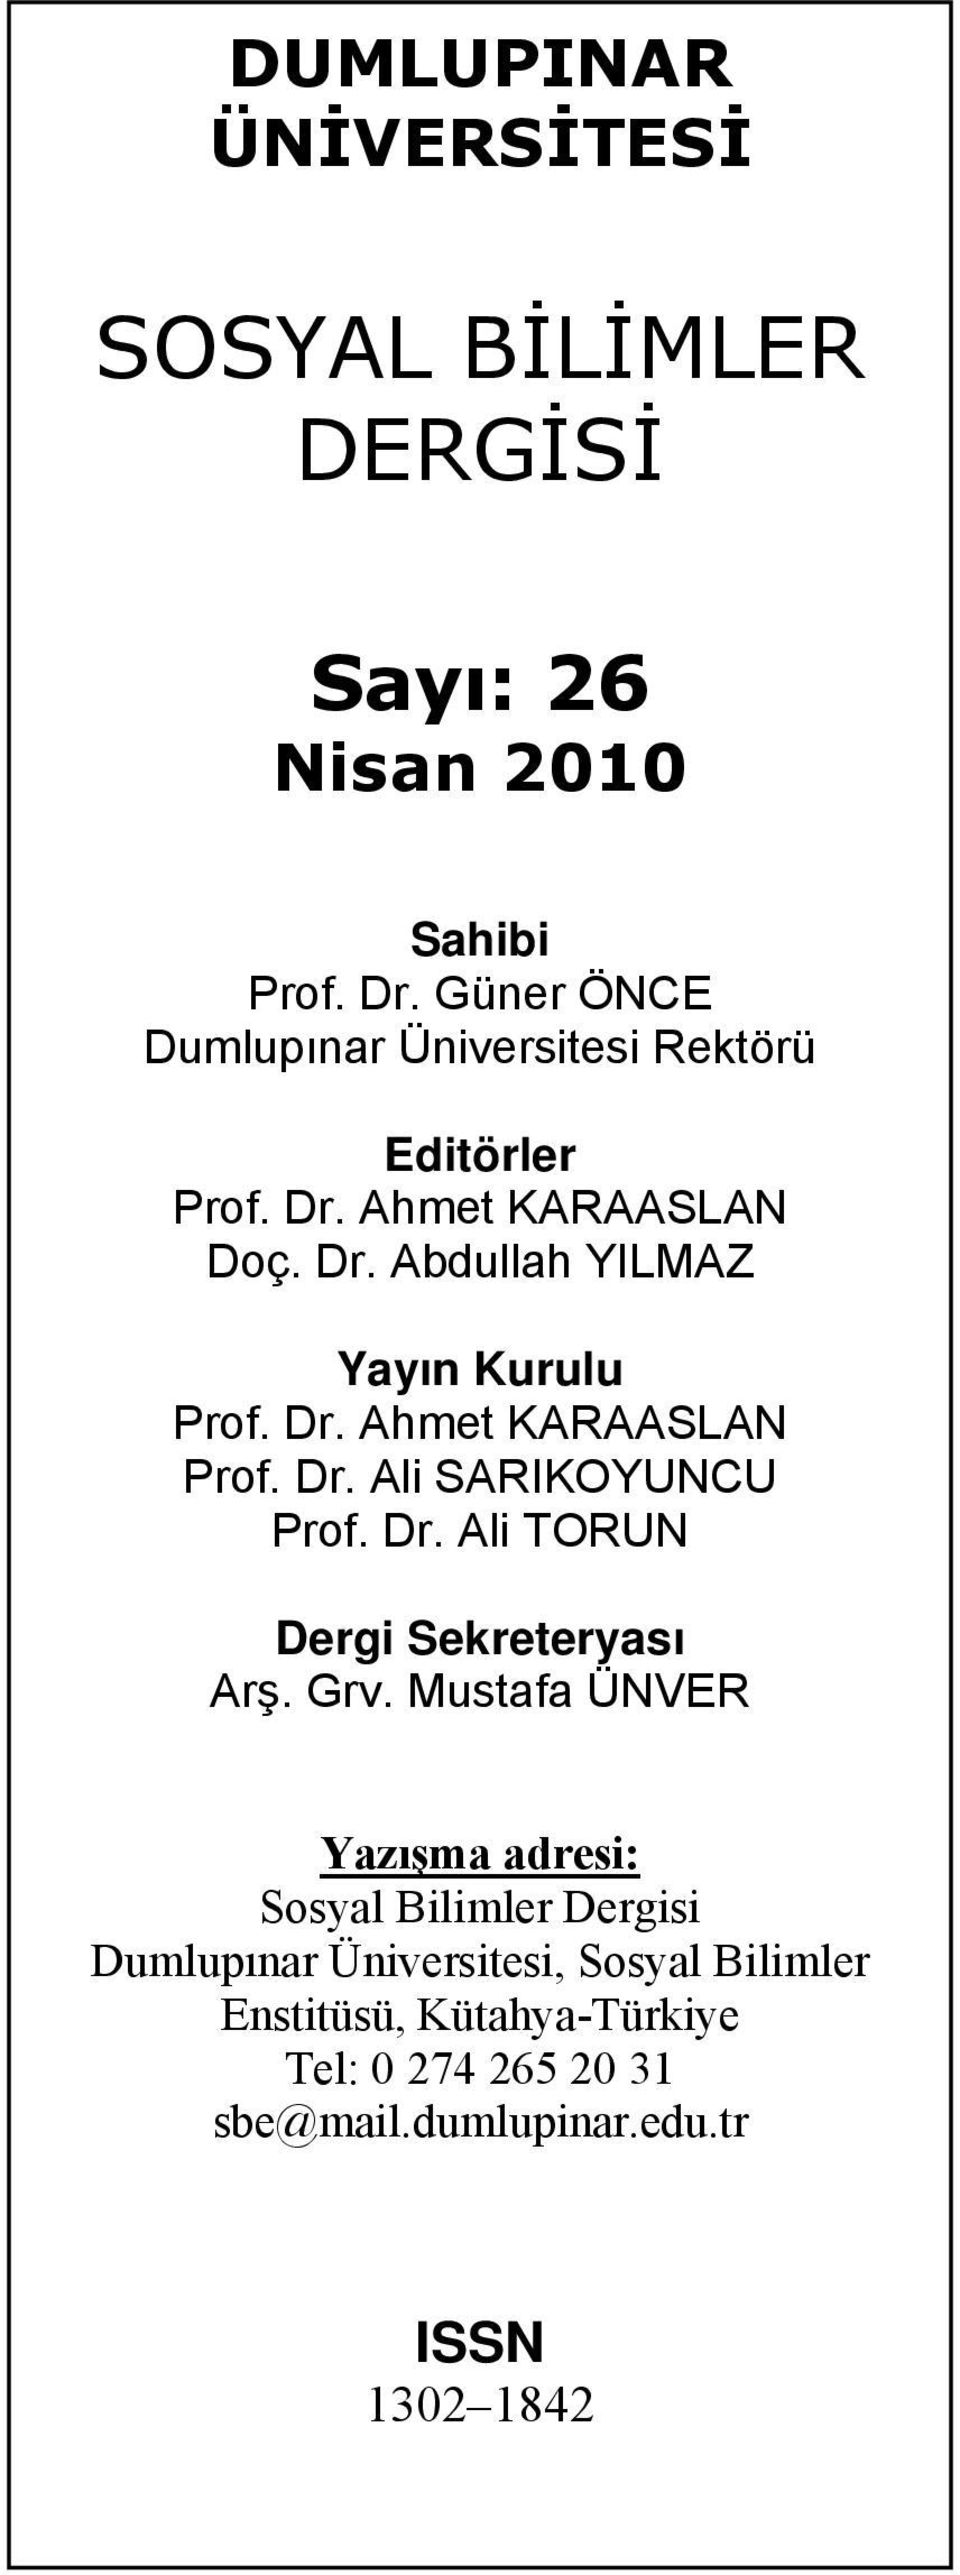 Dr. Ahmet KARAASLAN Prof. Dr. Ali SARIKOYUNCU Prof. Dr. Ali TORUN Dergi Sekreteryası Arş. Grv.